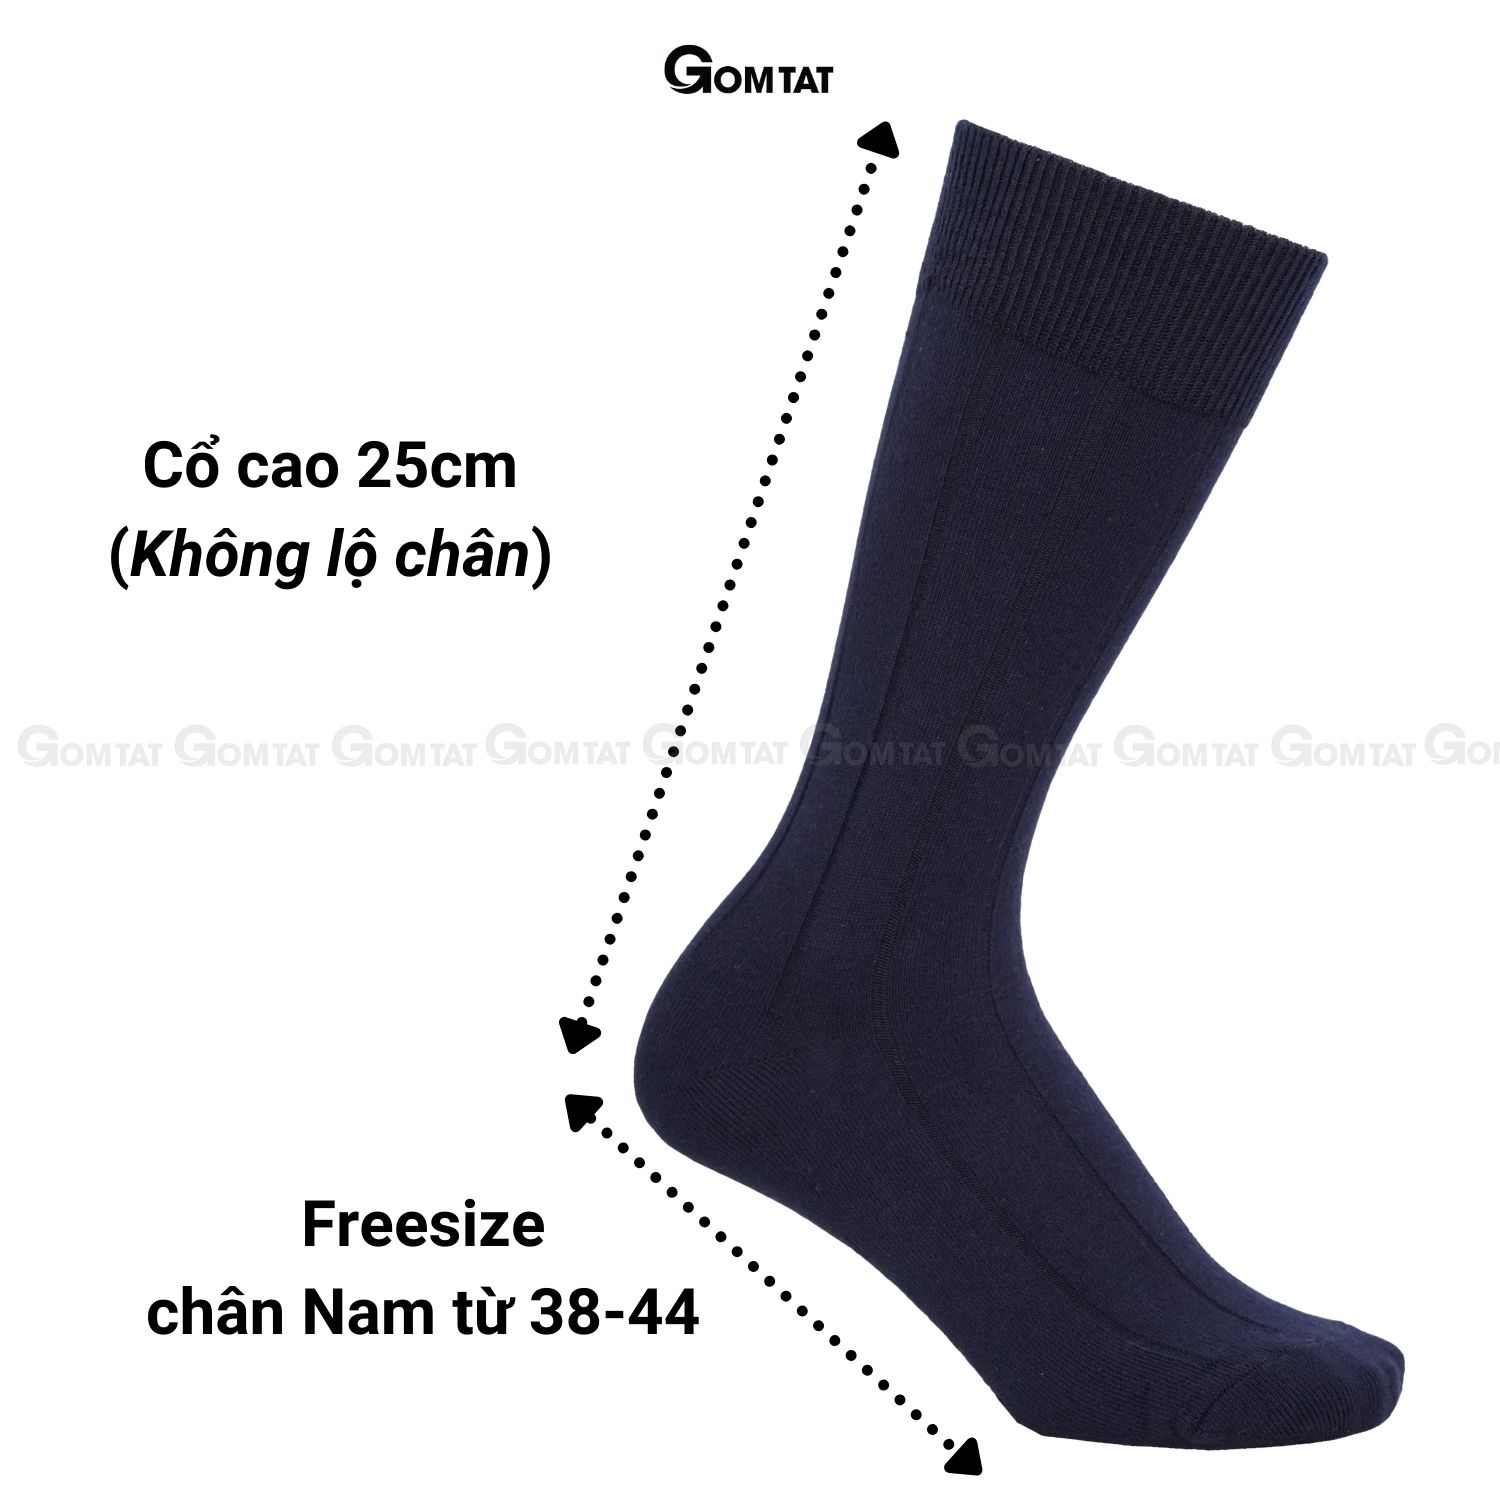 Hộp 4 đôi tất vớ đi giày tây nam GOMTAT mẫu gân chìm, chất liệu cotton cao cấp thoáng mát êm chân - GOM-MIX09-CB4